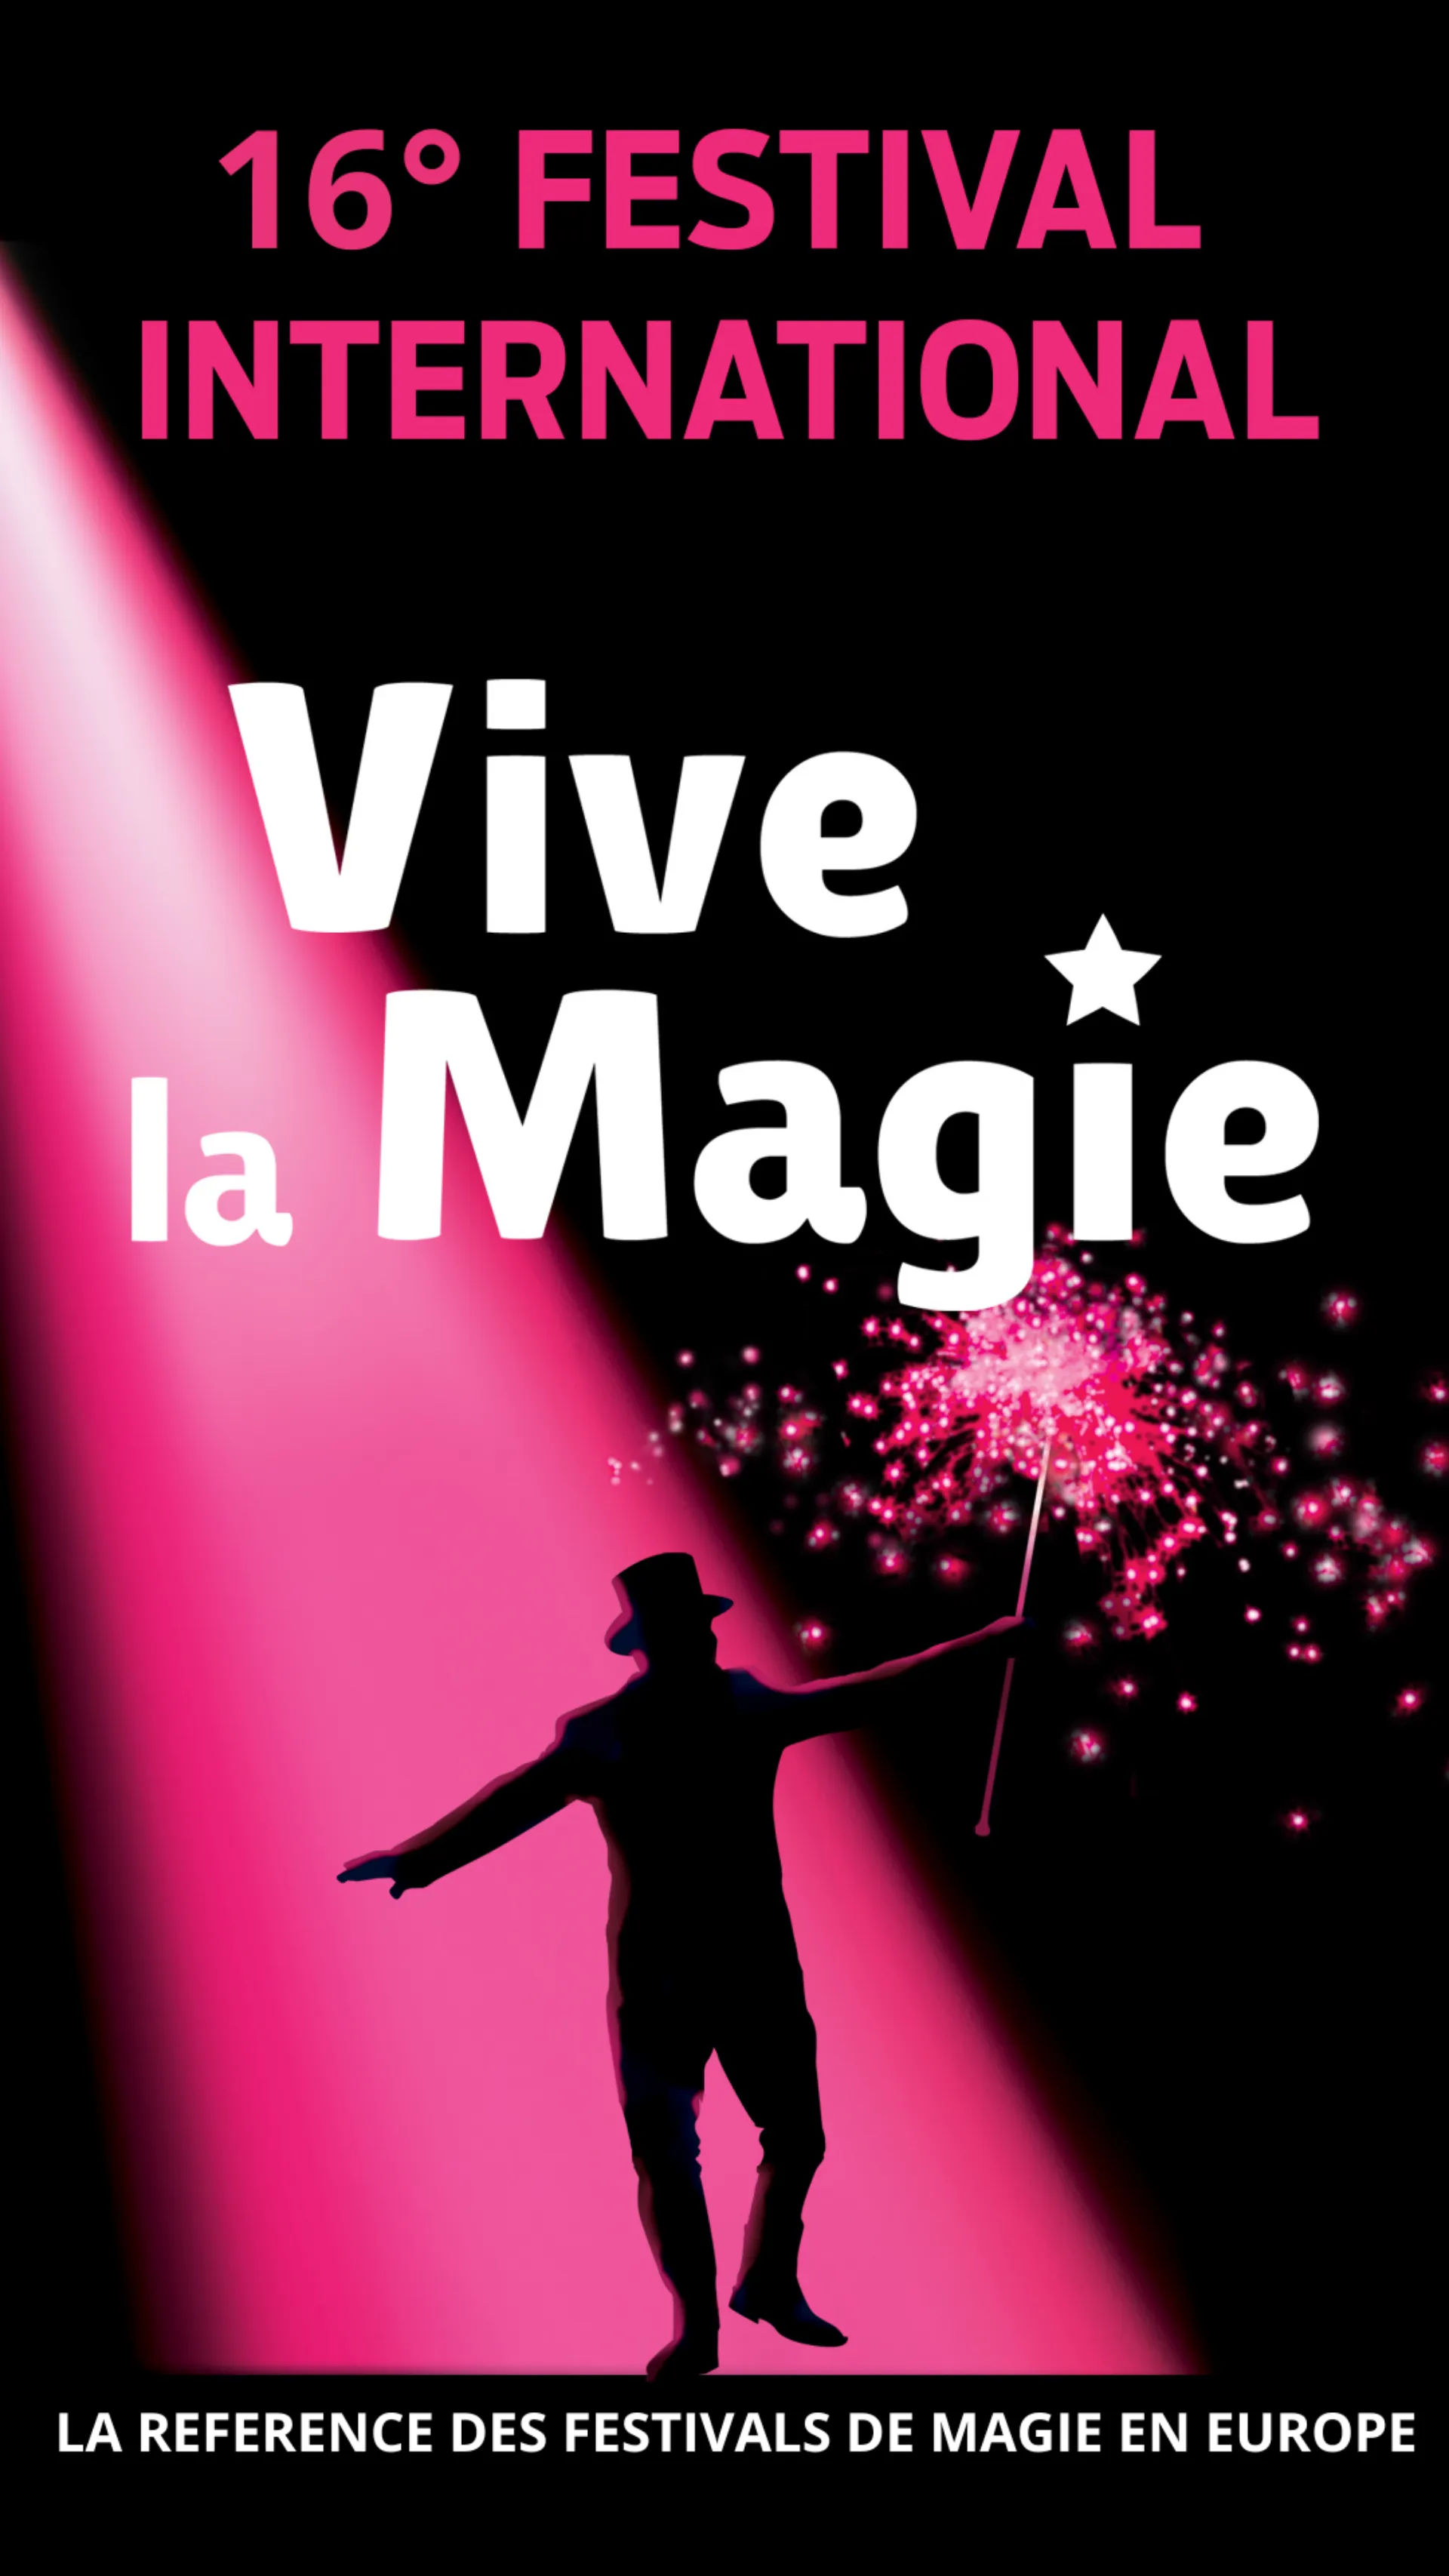 Shows-International Festival Vive la Magie